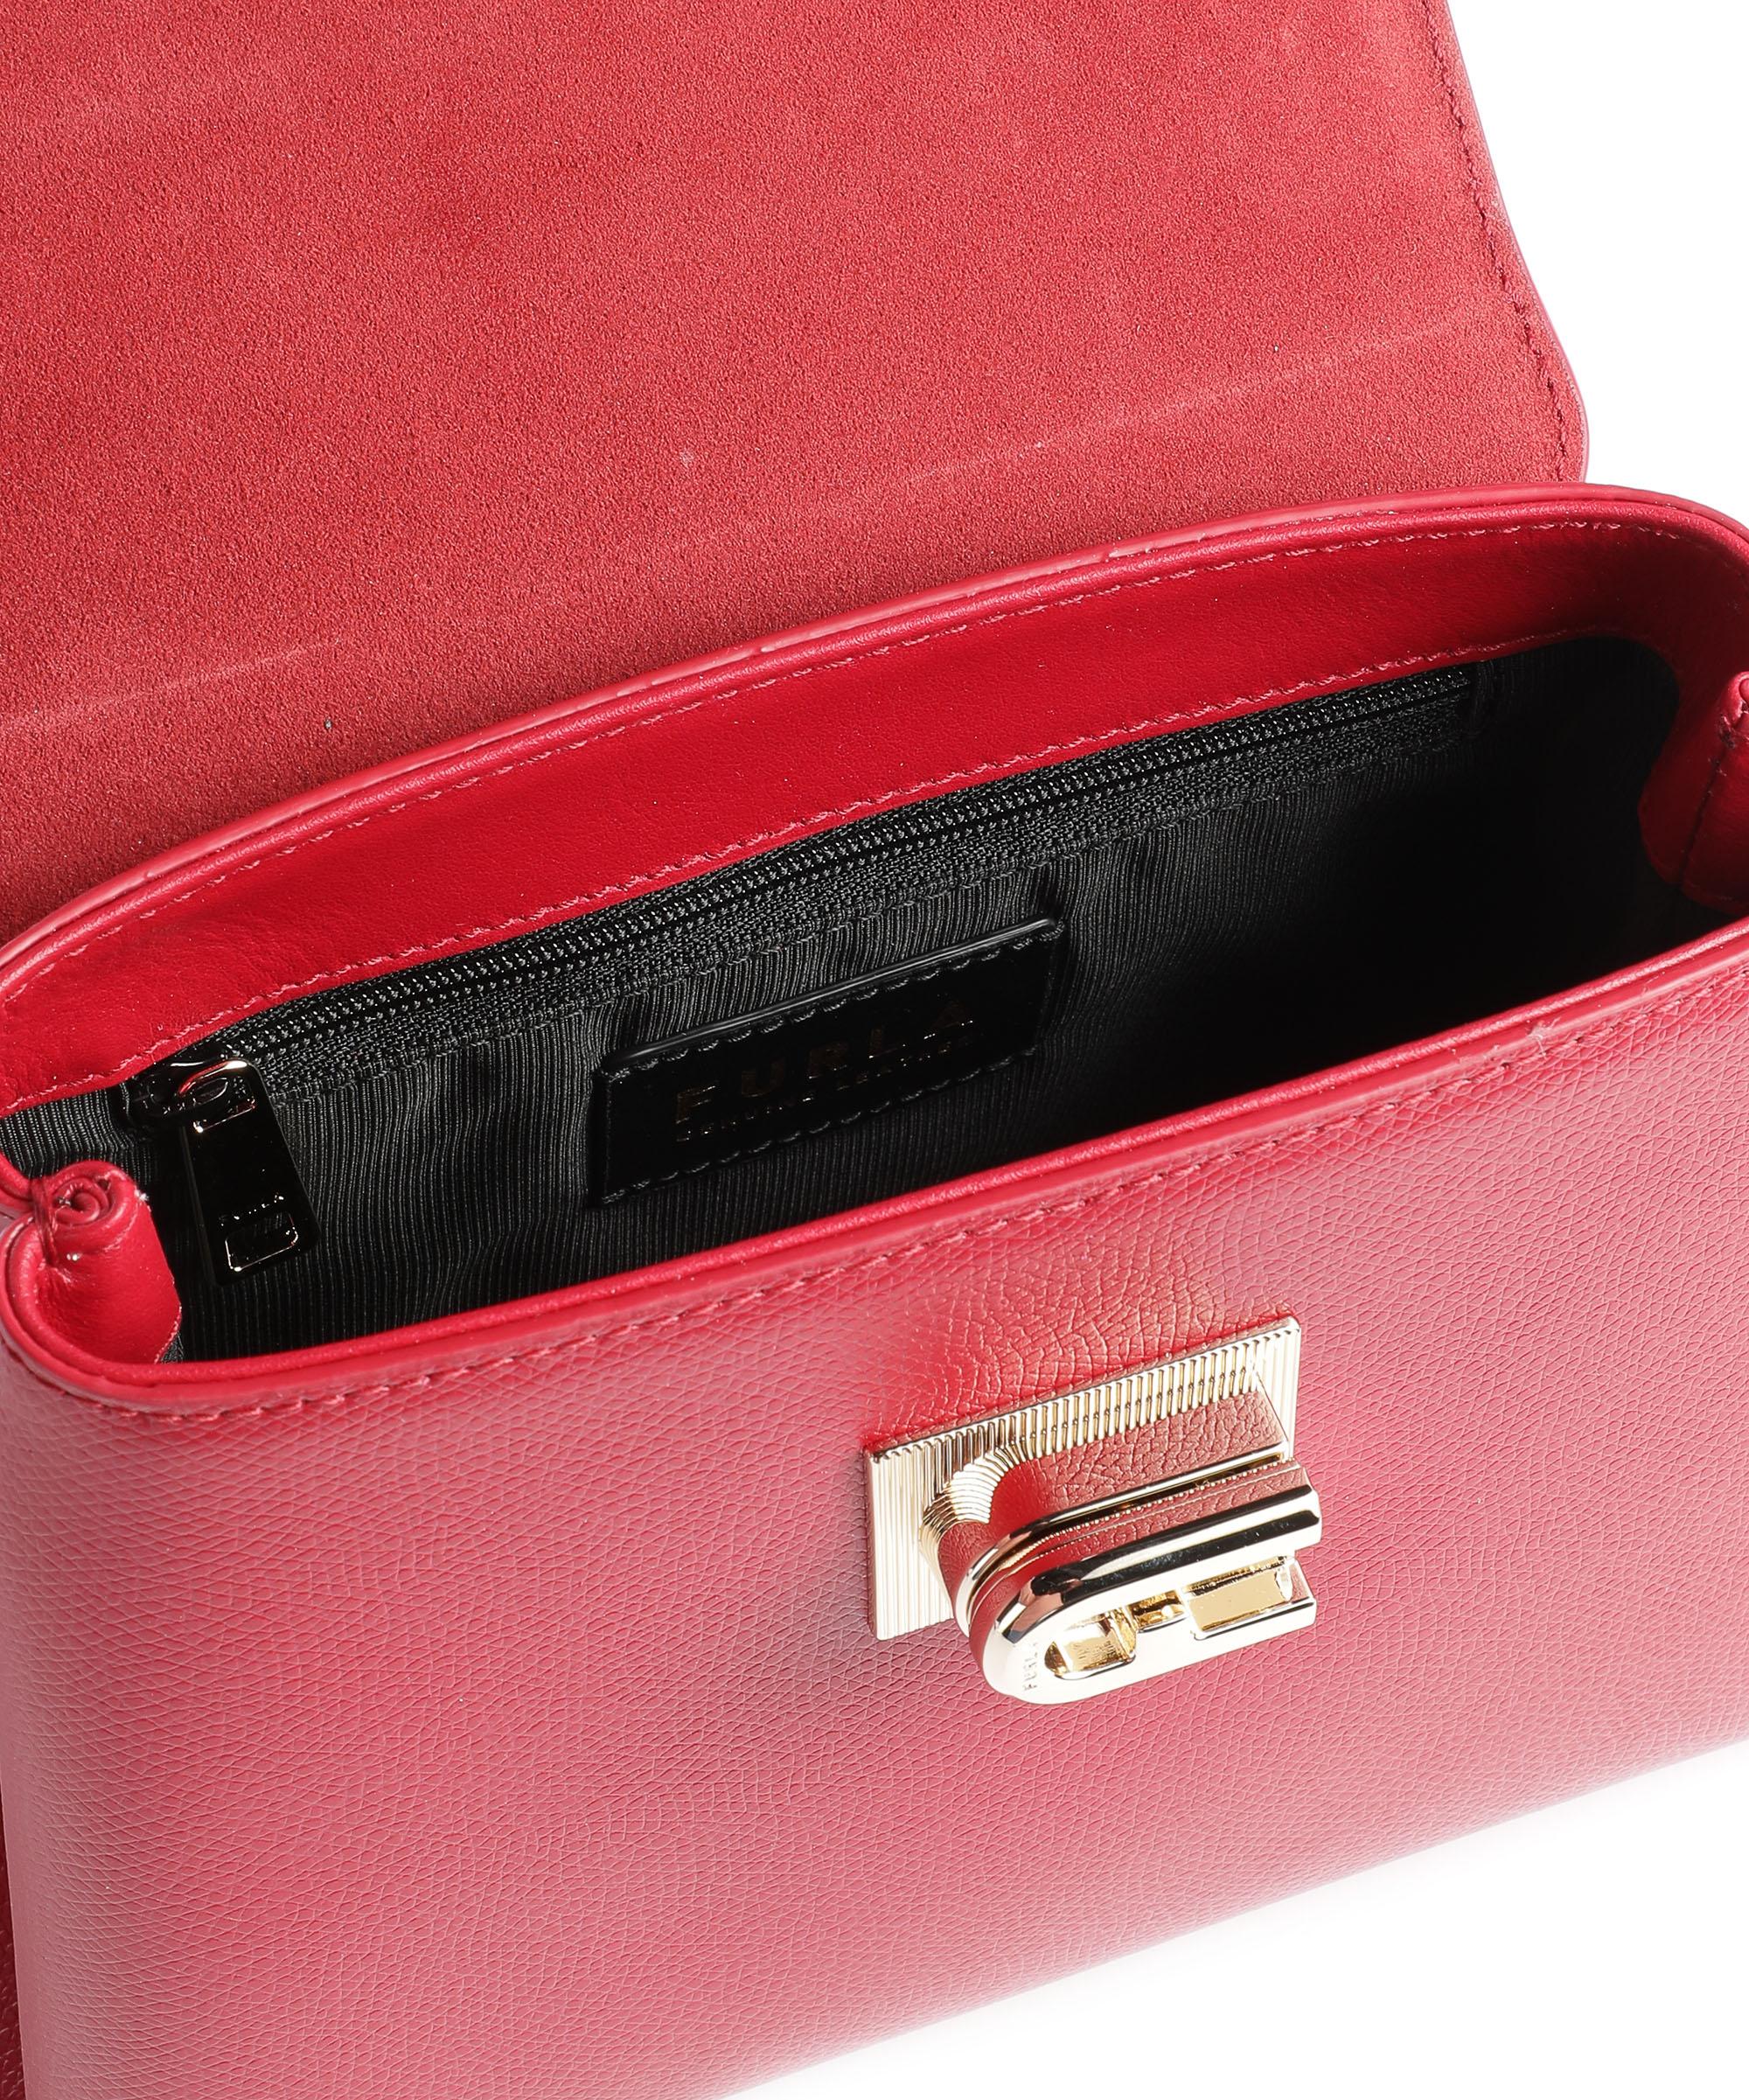 Metropolis leather mini bag Furla Red in Leather - 40255742